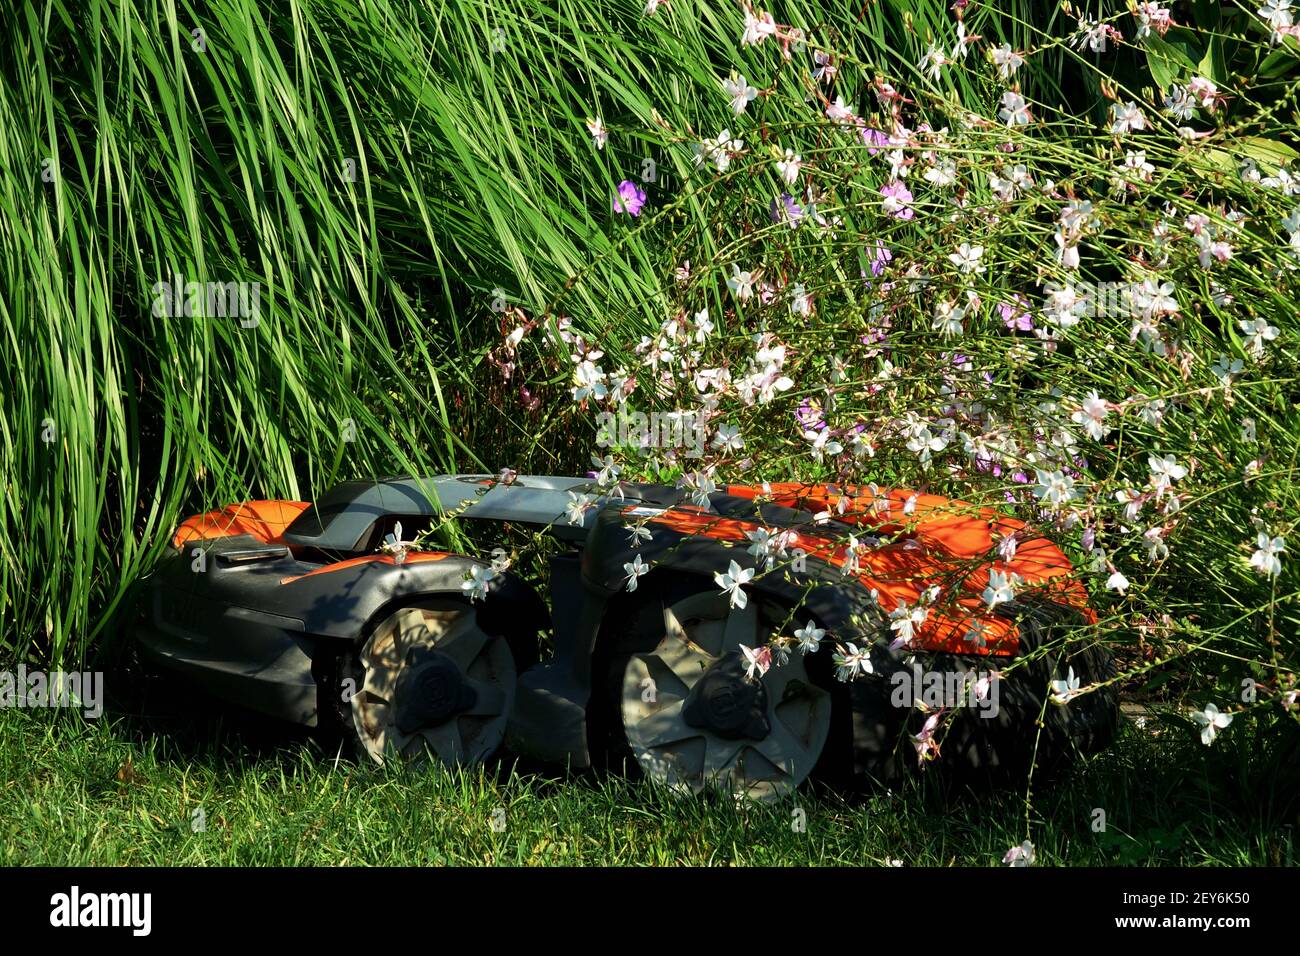 Tondeuse robot tondeuse tonte pelouse jardin tonte bordure de l'herbe Banque D'Images